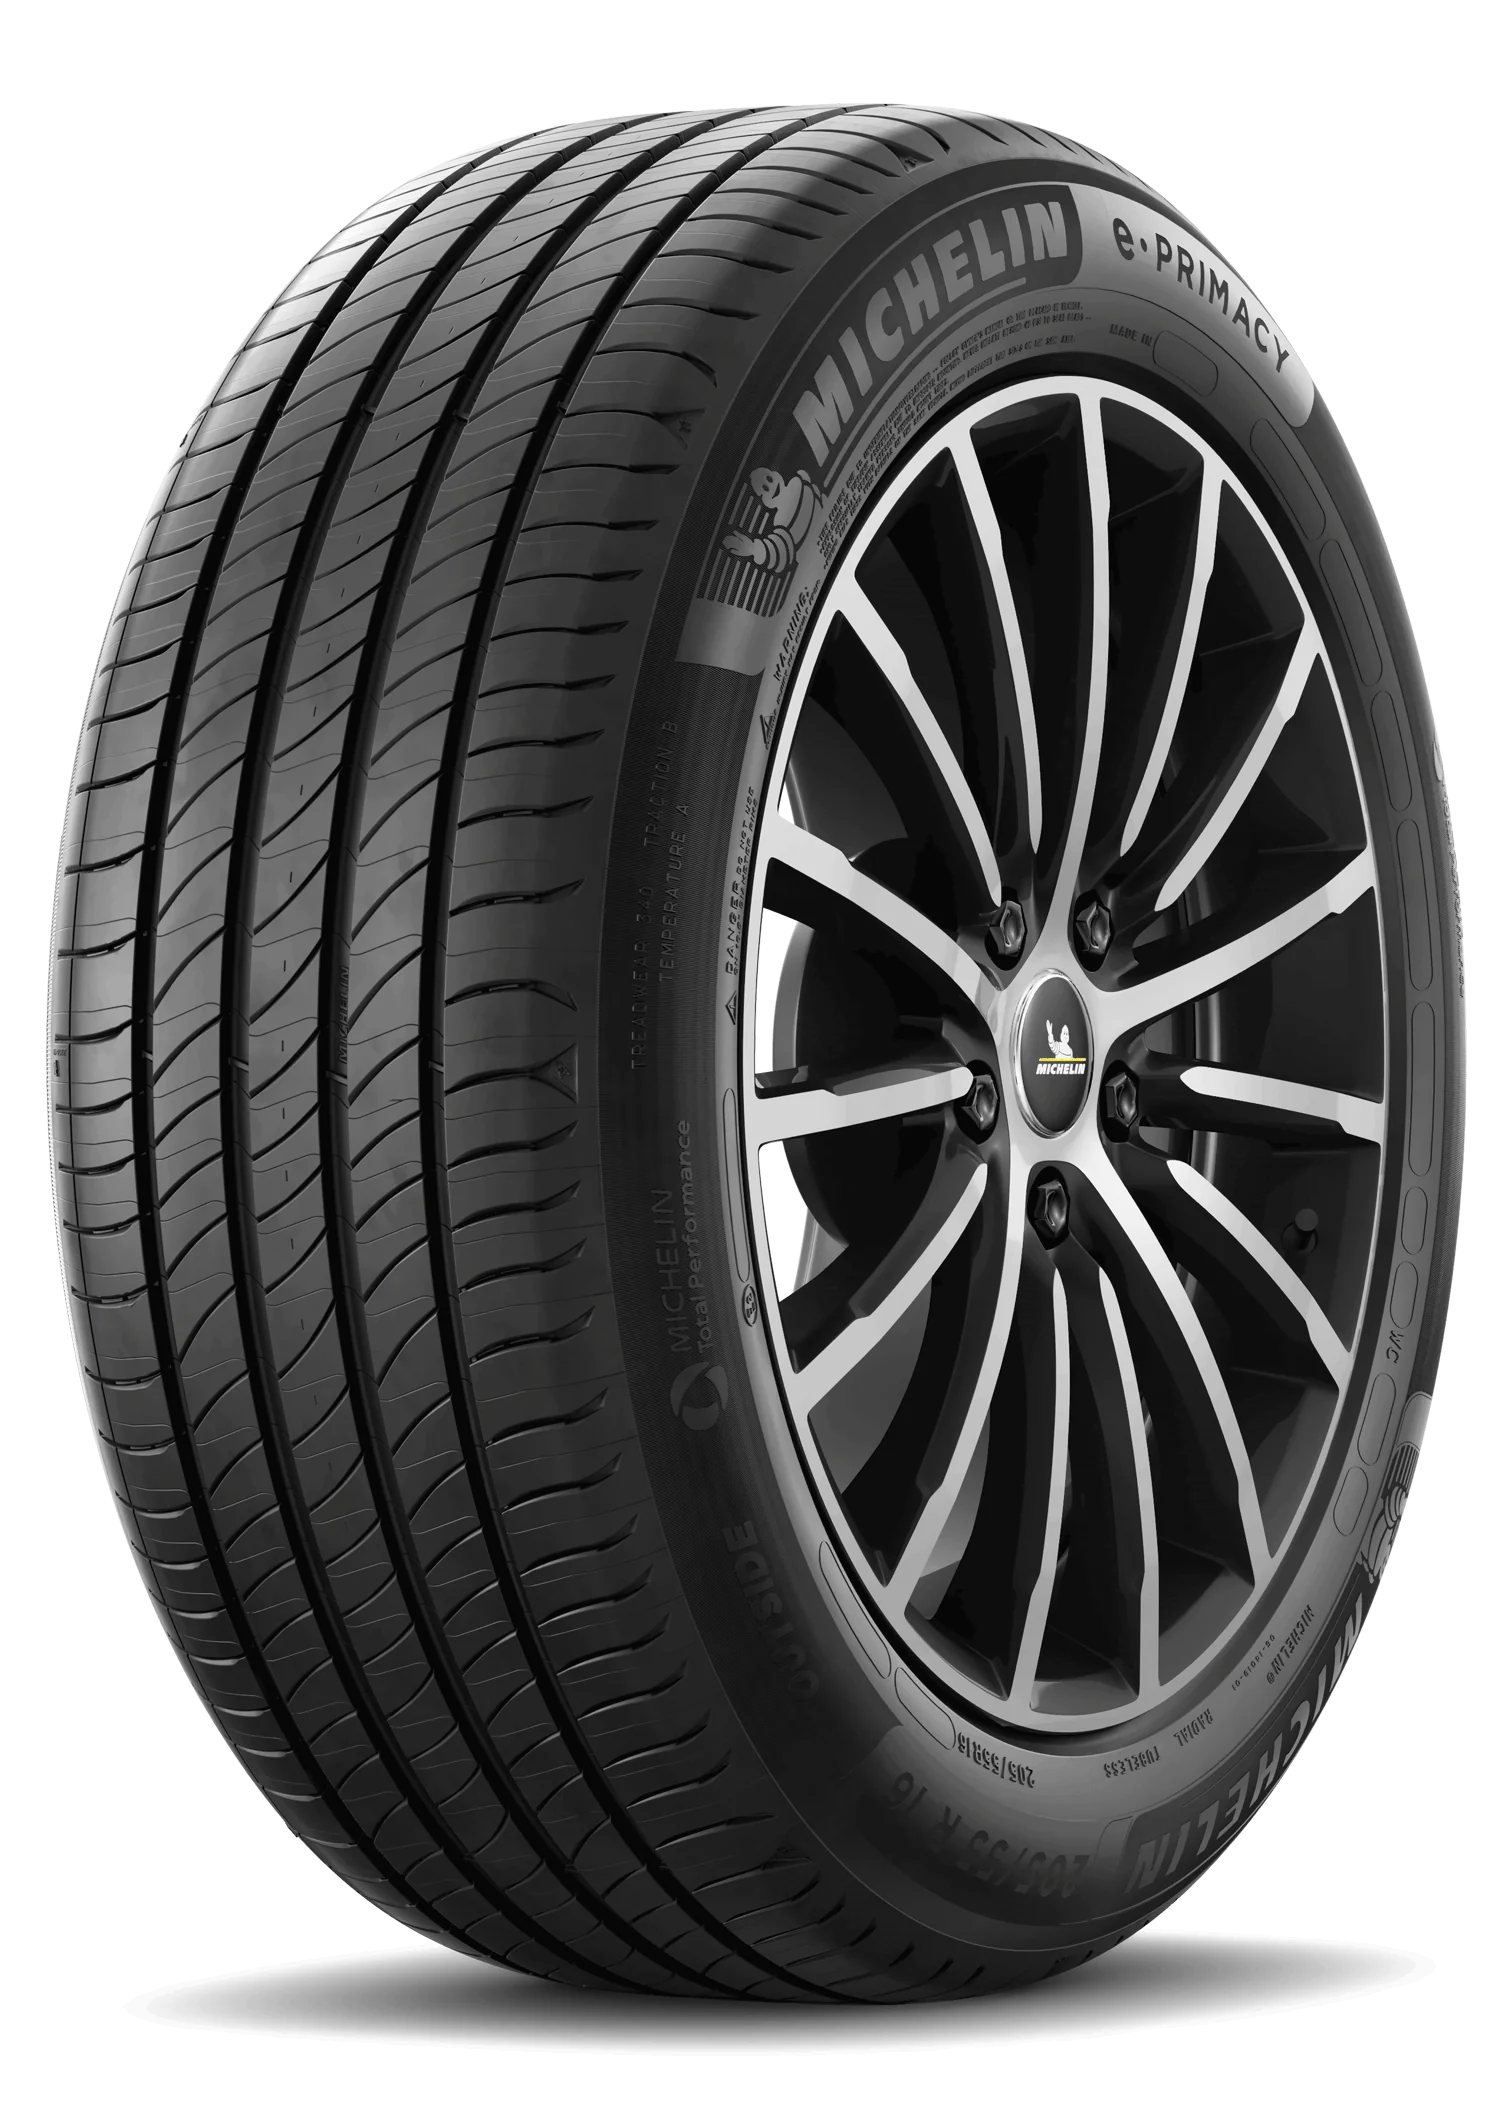 Michelin Michelin 245/55 R17 106H Eprimacy XL pneumatici nuovi Estivo 